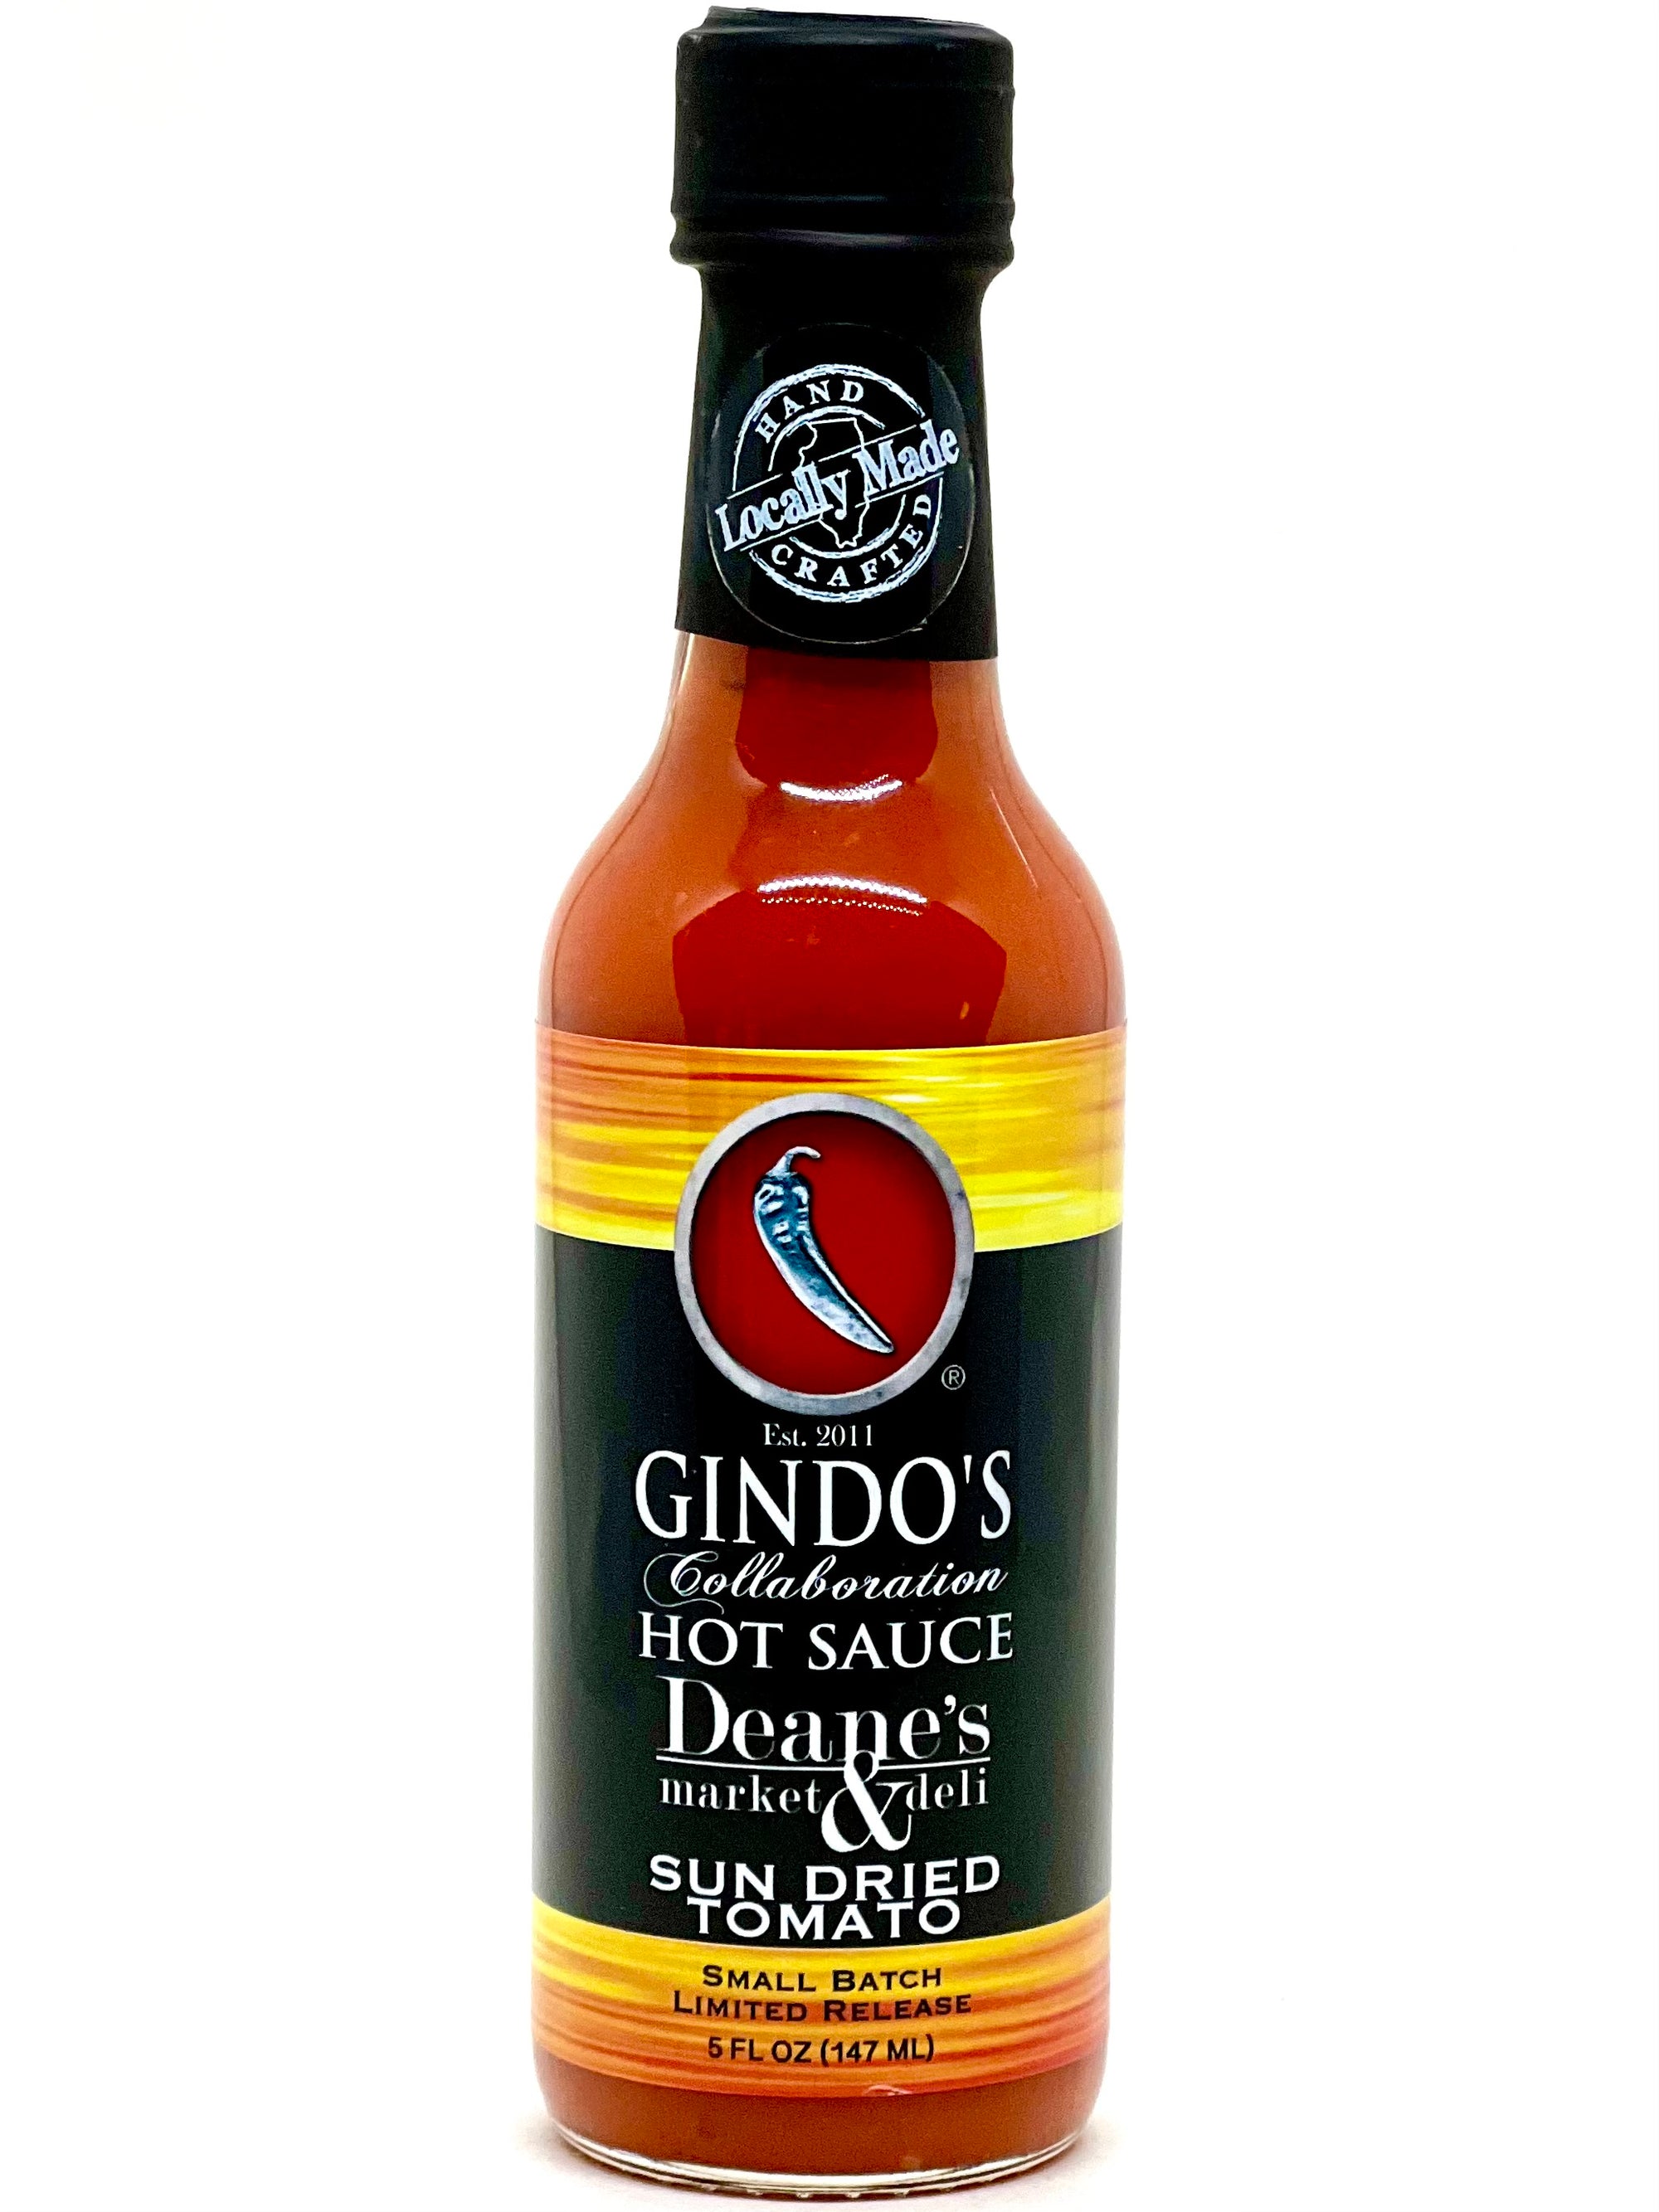 Gindo's Sun Dried Tomato fresh pepper hot sauce in collaboration with Deane's Market & Deli